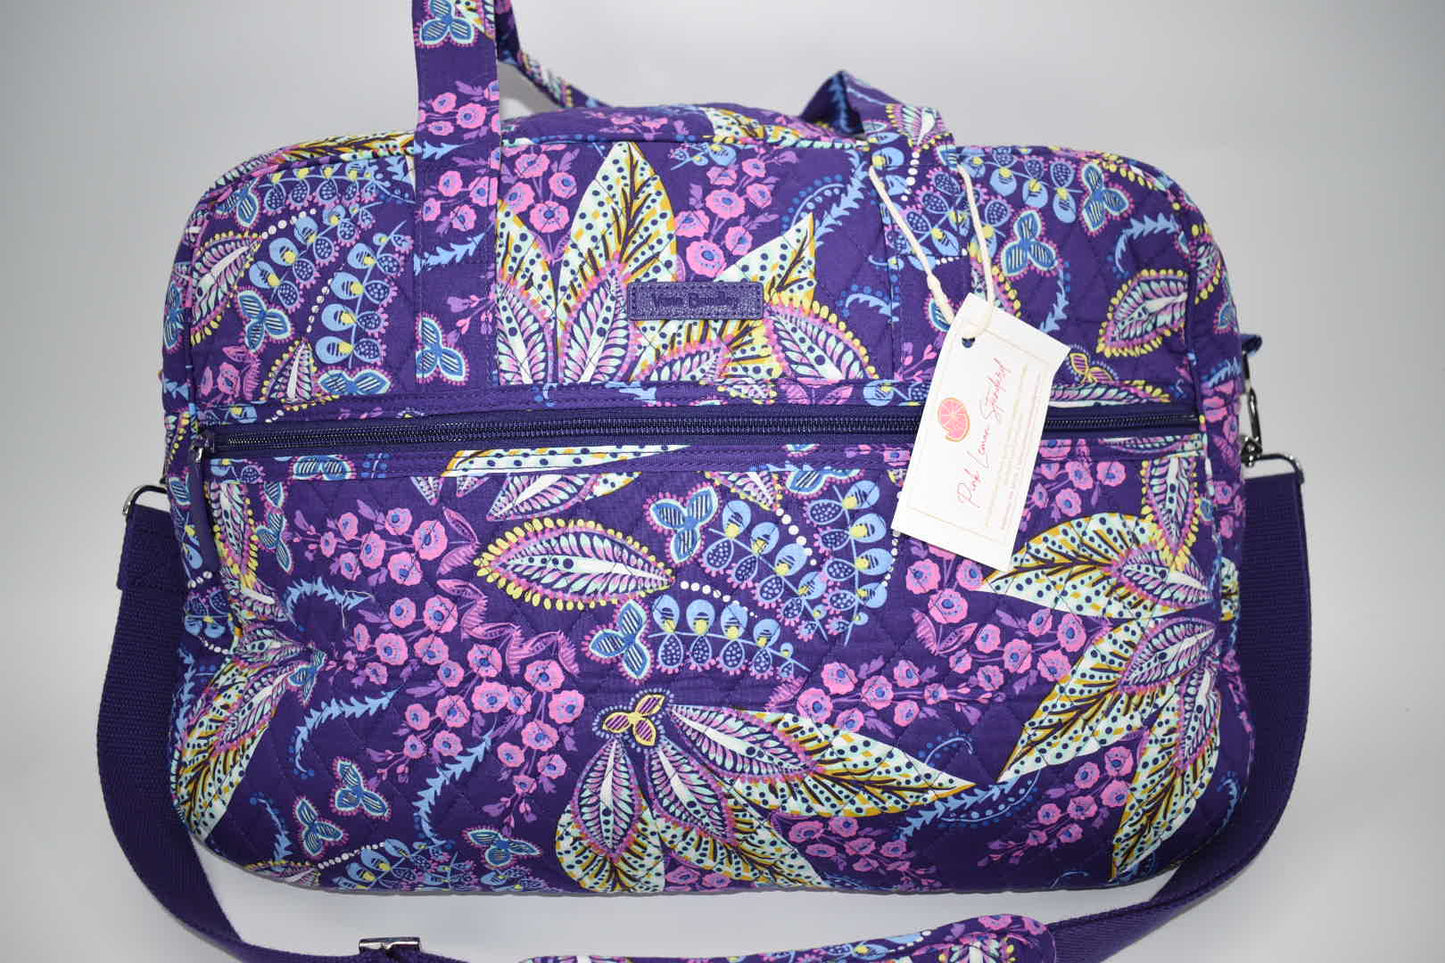 Vera Bradley Medium Traveler Weekender Bag in Batik Leaves Pattern